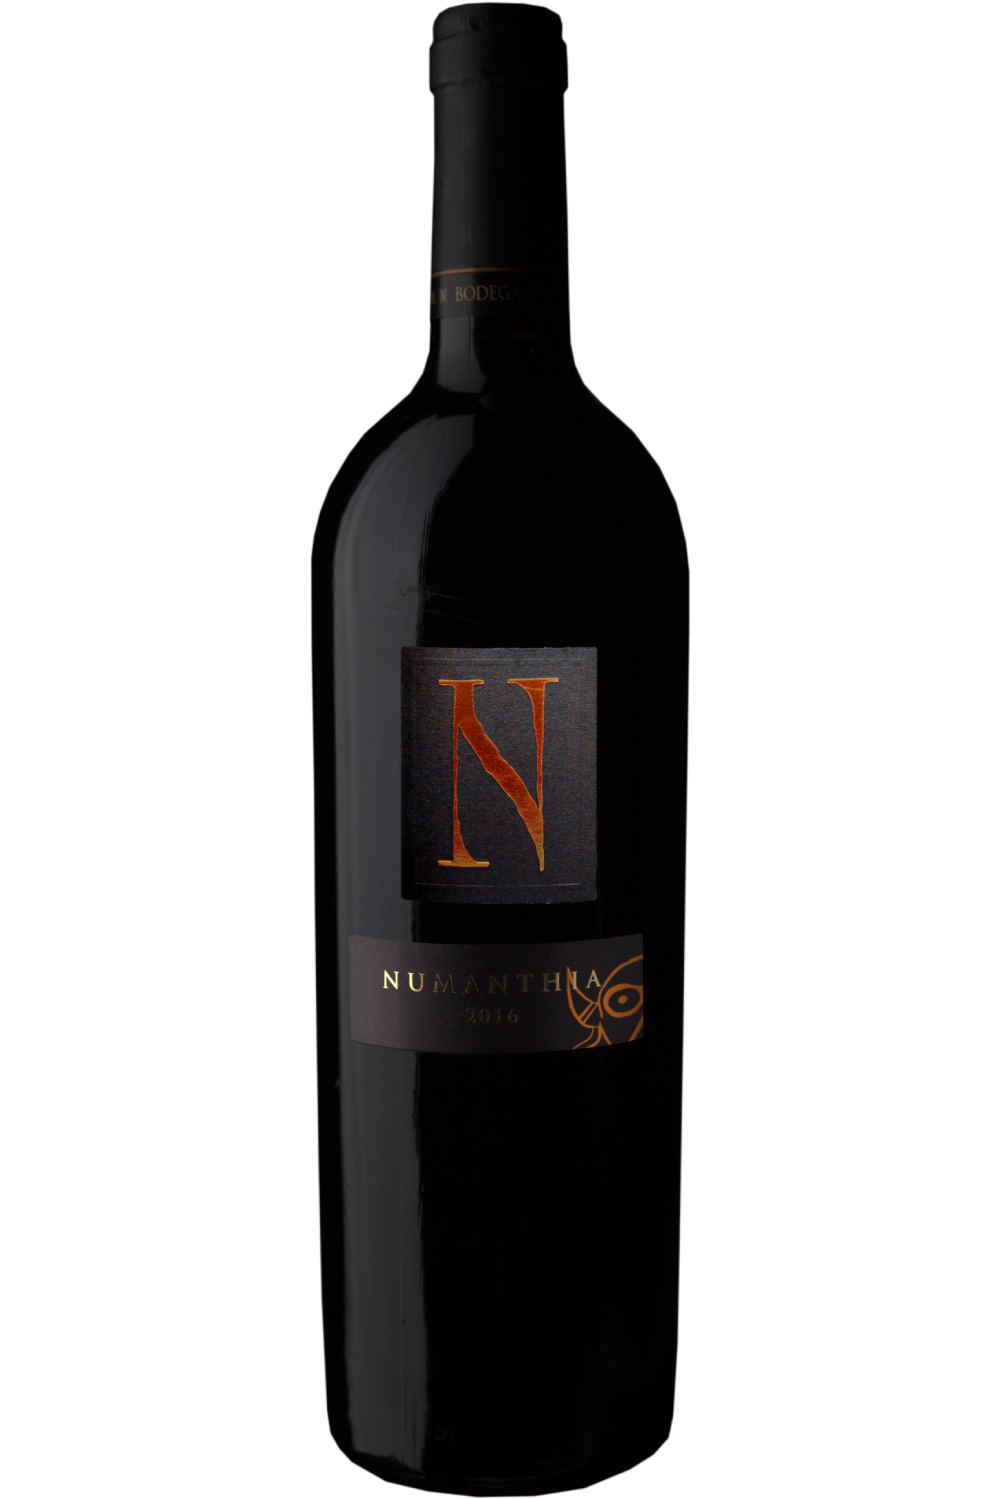 WineVins Numanthia Tinto 2016